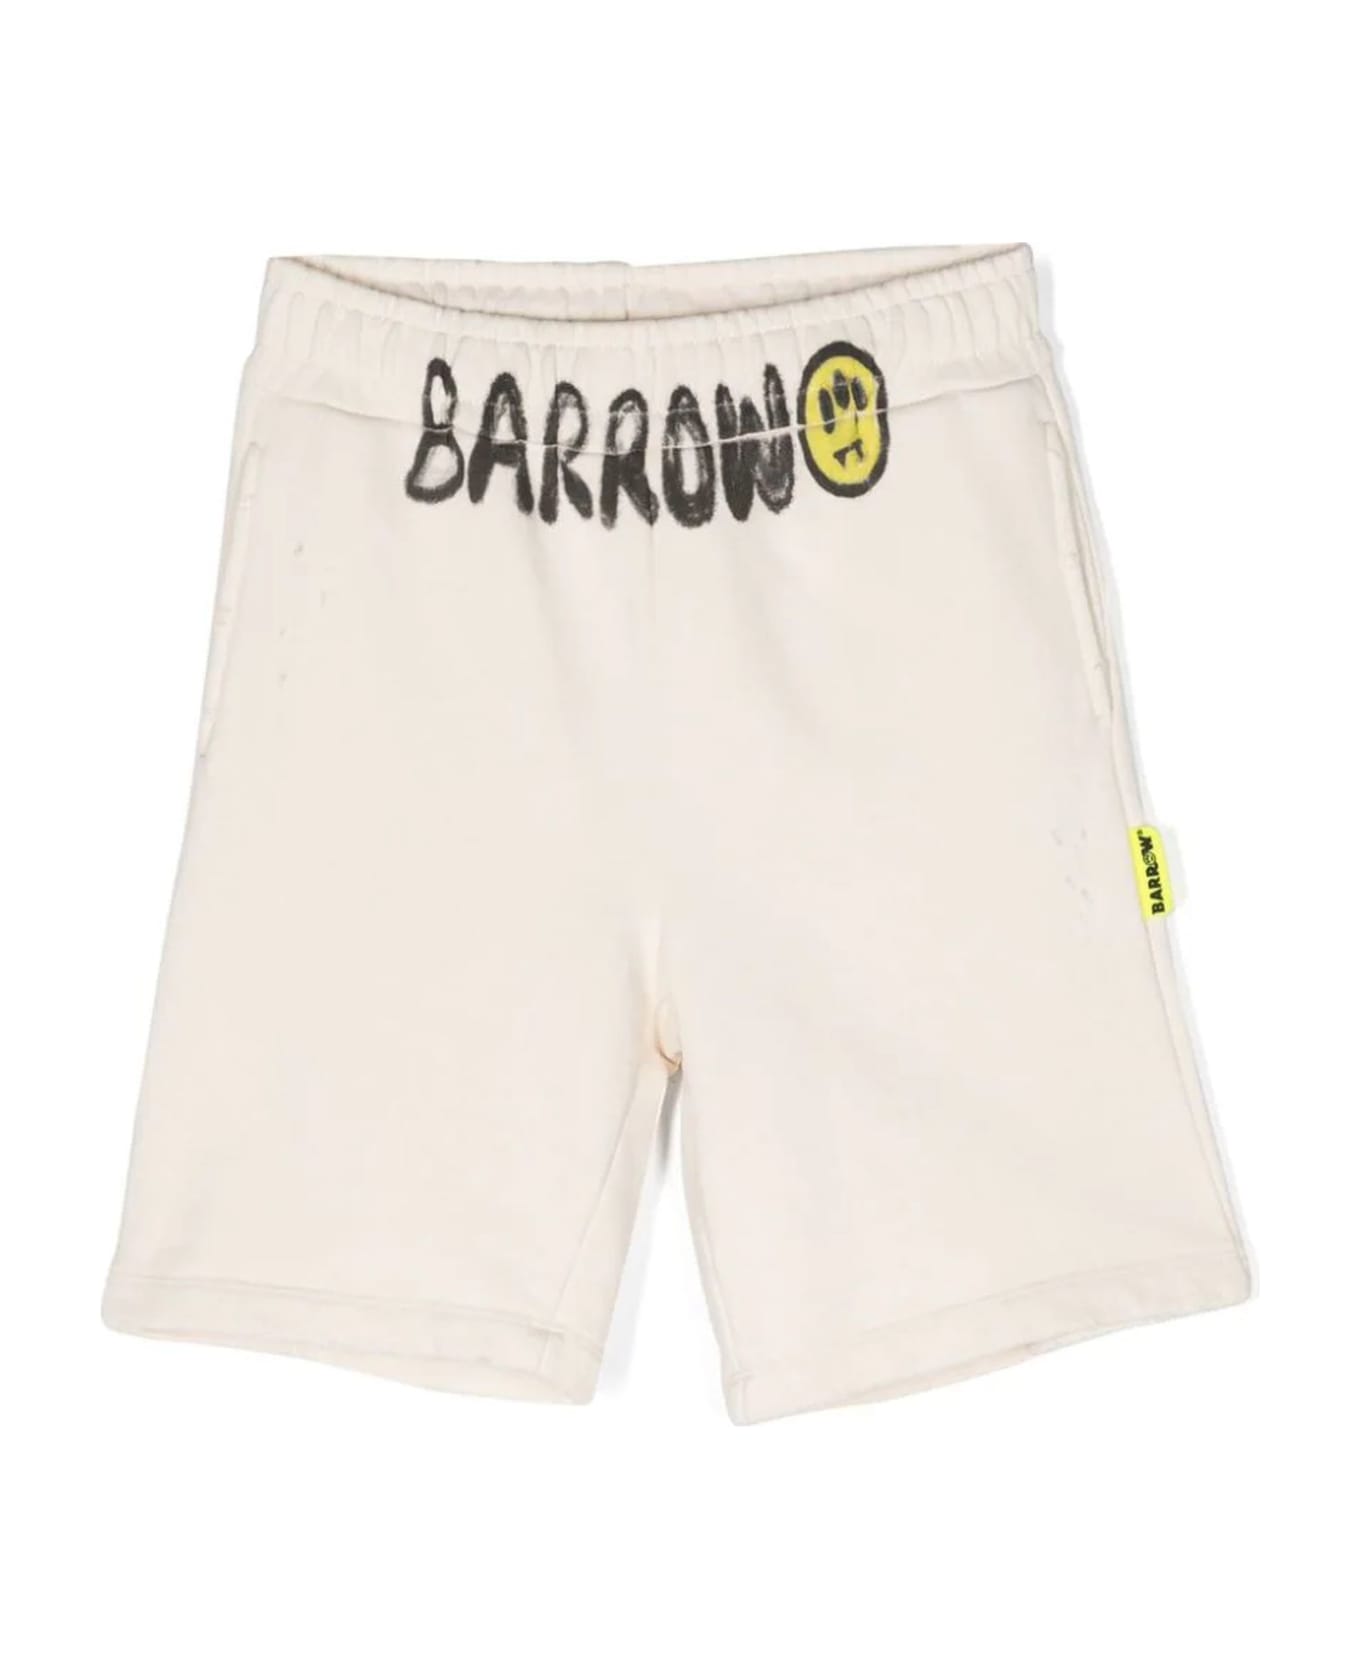 Barrow 's Shorts Beige - Beige